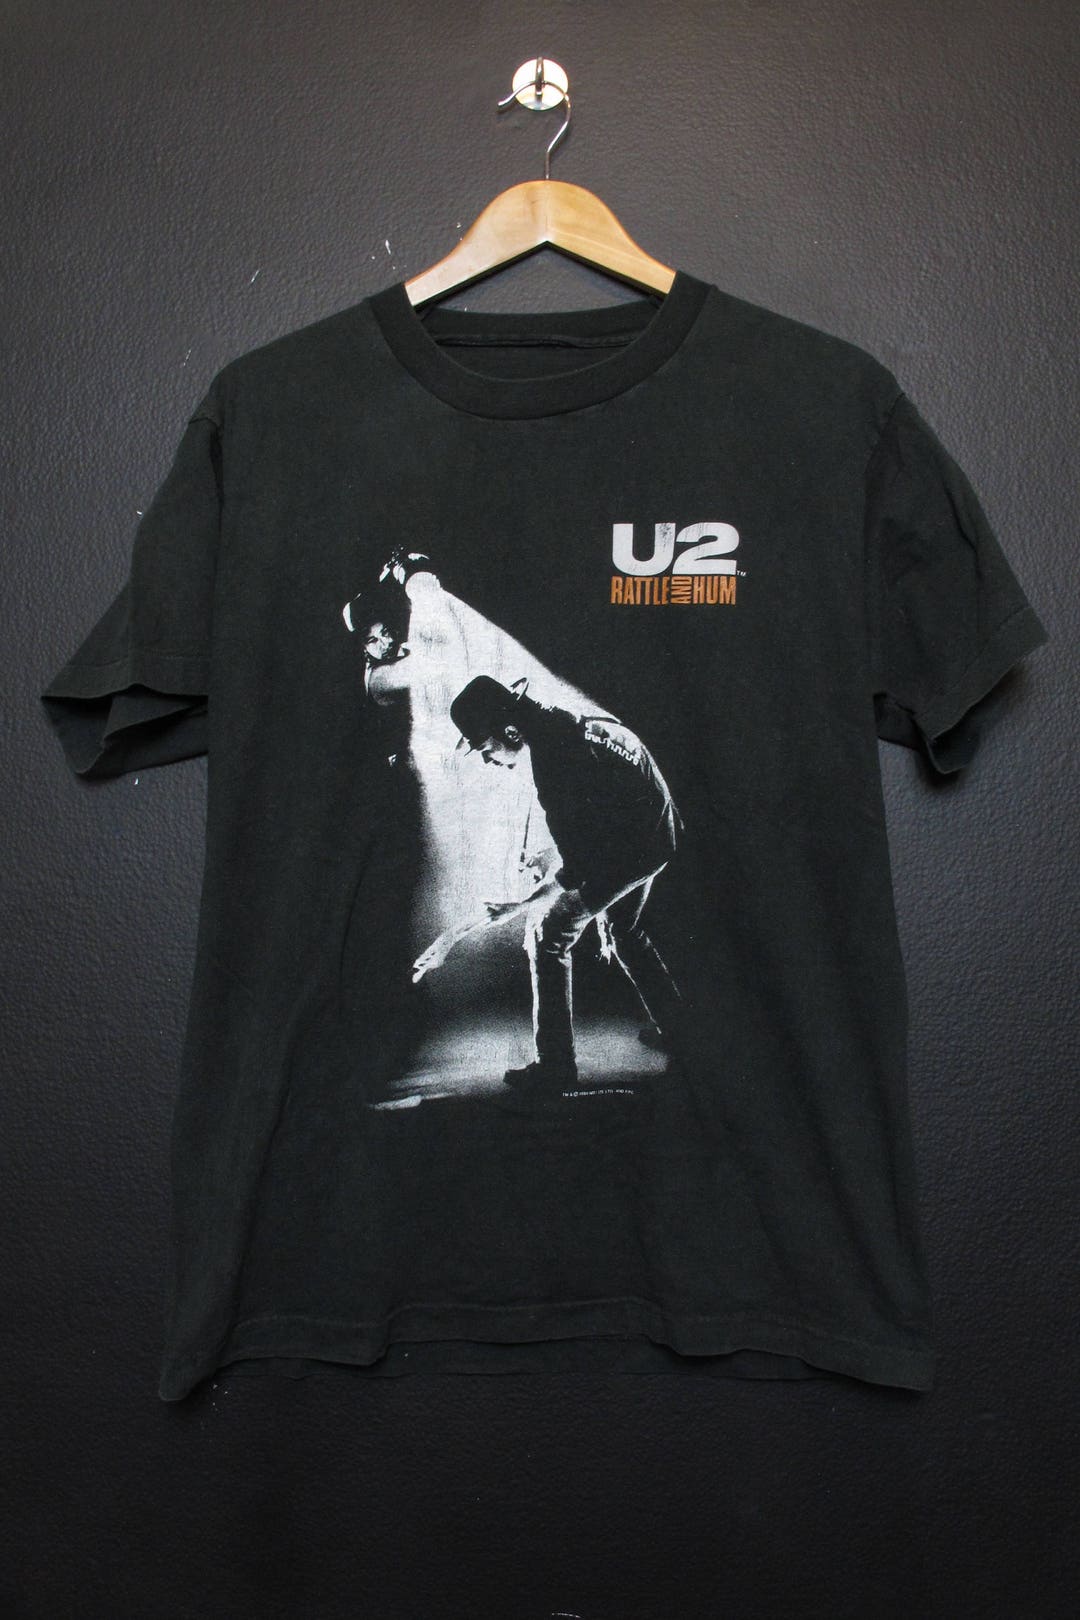 U2 Rattle and Hum 1988 Vintage Tshirt 